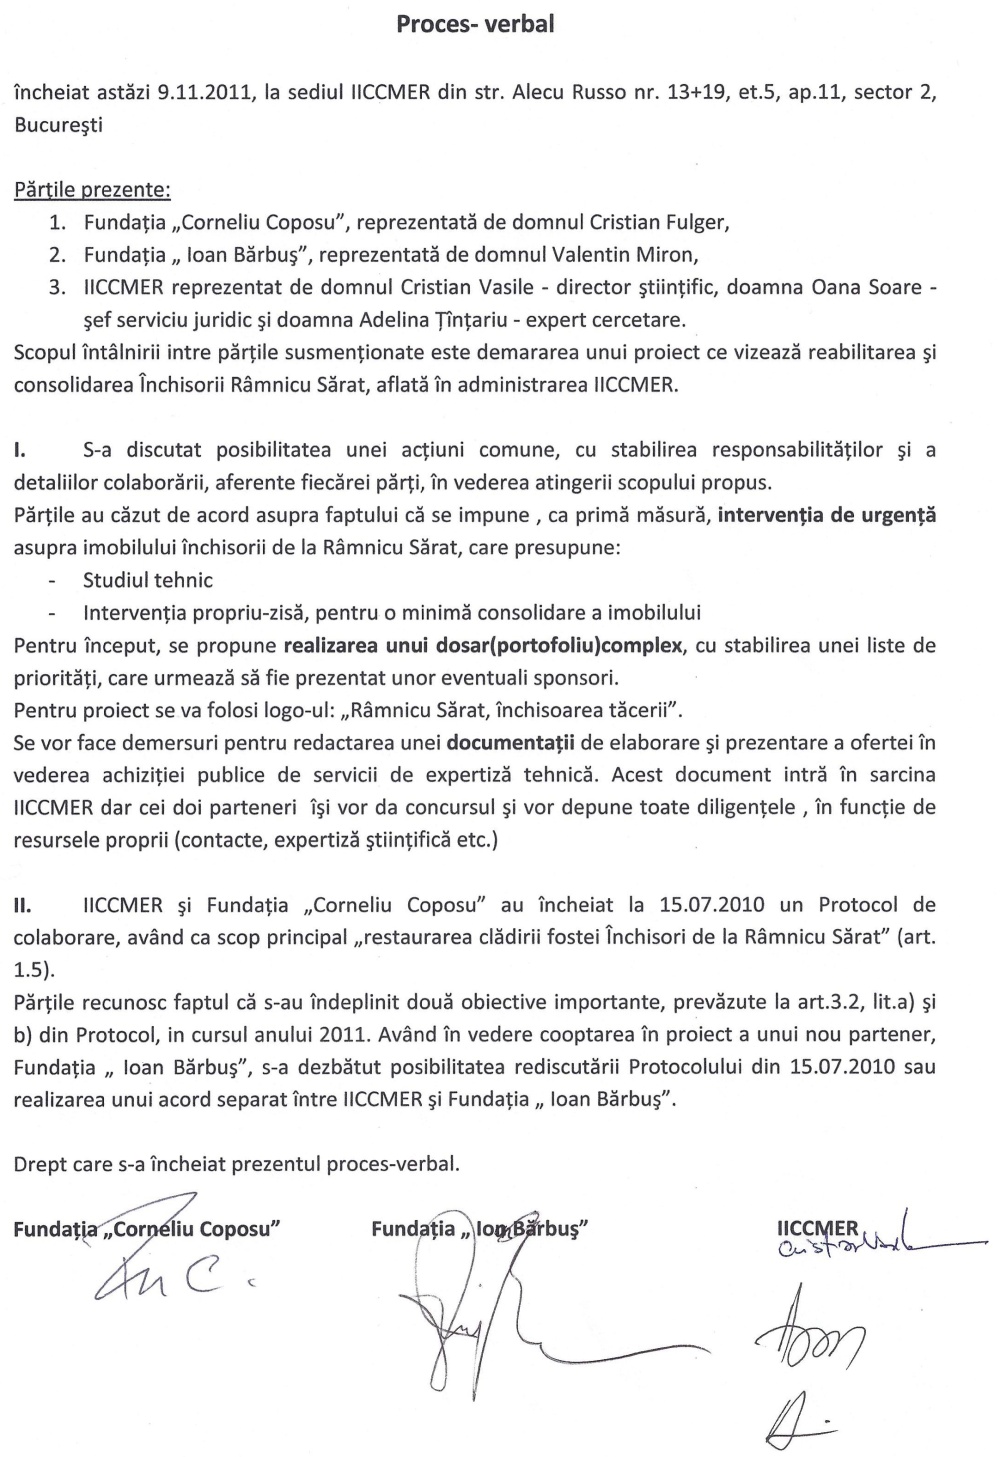 Proces verbal, 9.11.2011 - Fundația Corneliu Coposu, Fundația Ioan Bărbuș, IICCMER